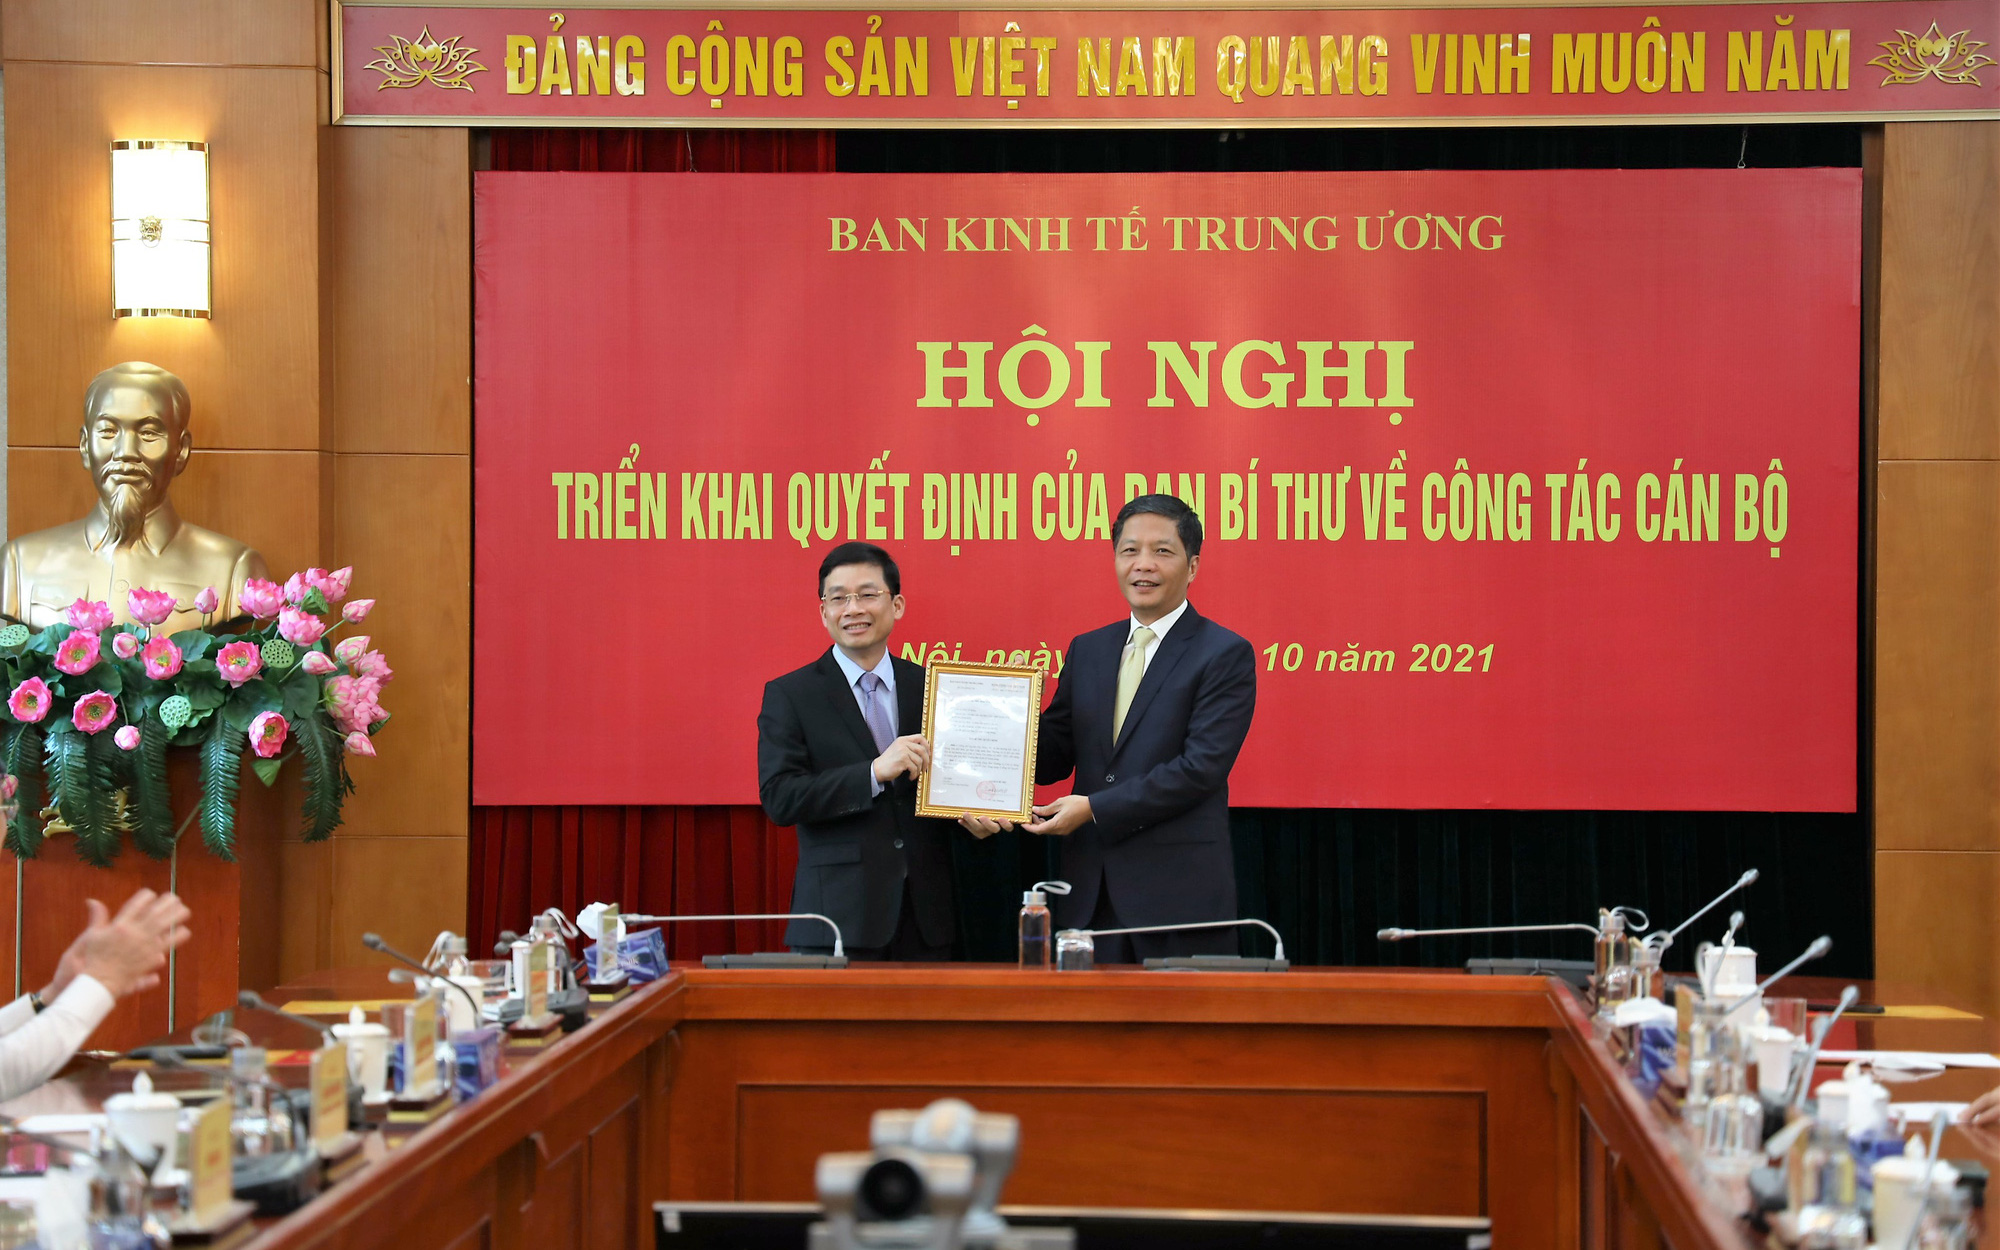 Trao quyết định bổ nhiệm Phó Trưởng Ban Kinh tế Trung ương cho ông Nguyễn Duy Hưng